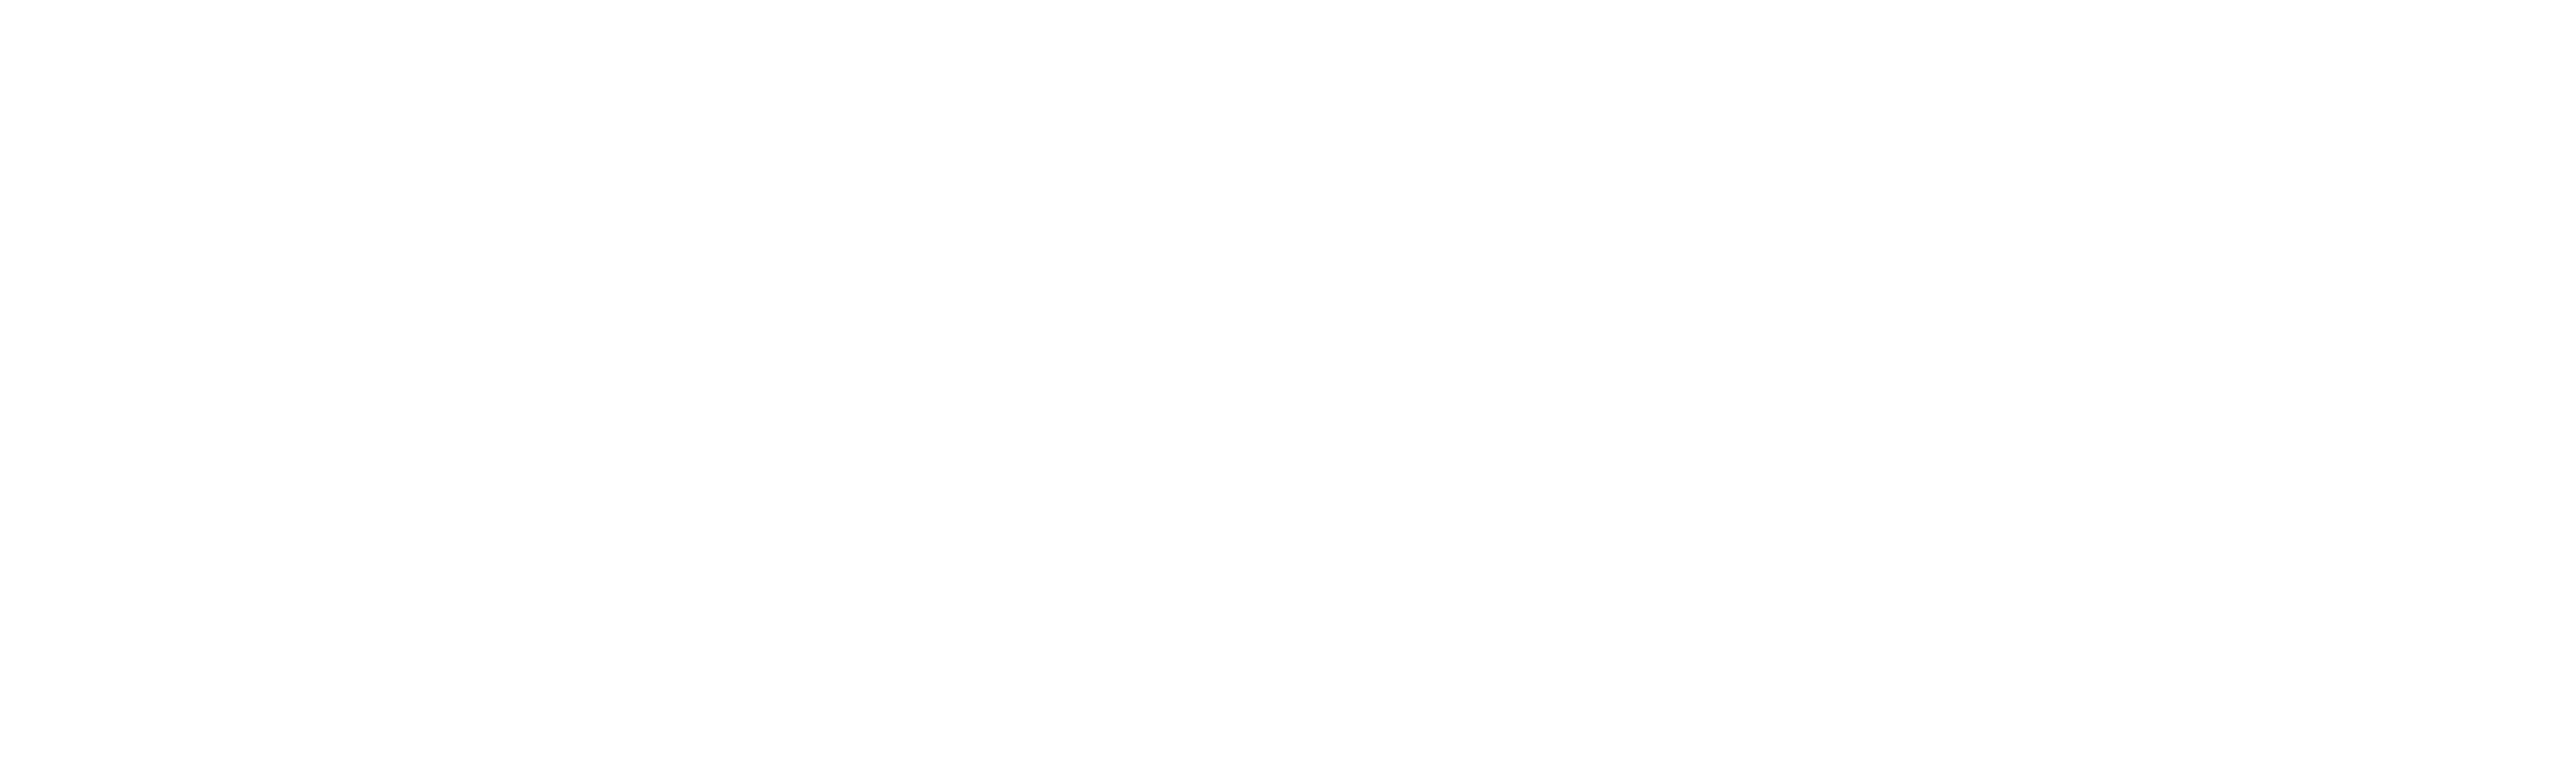 discover south carolina logo